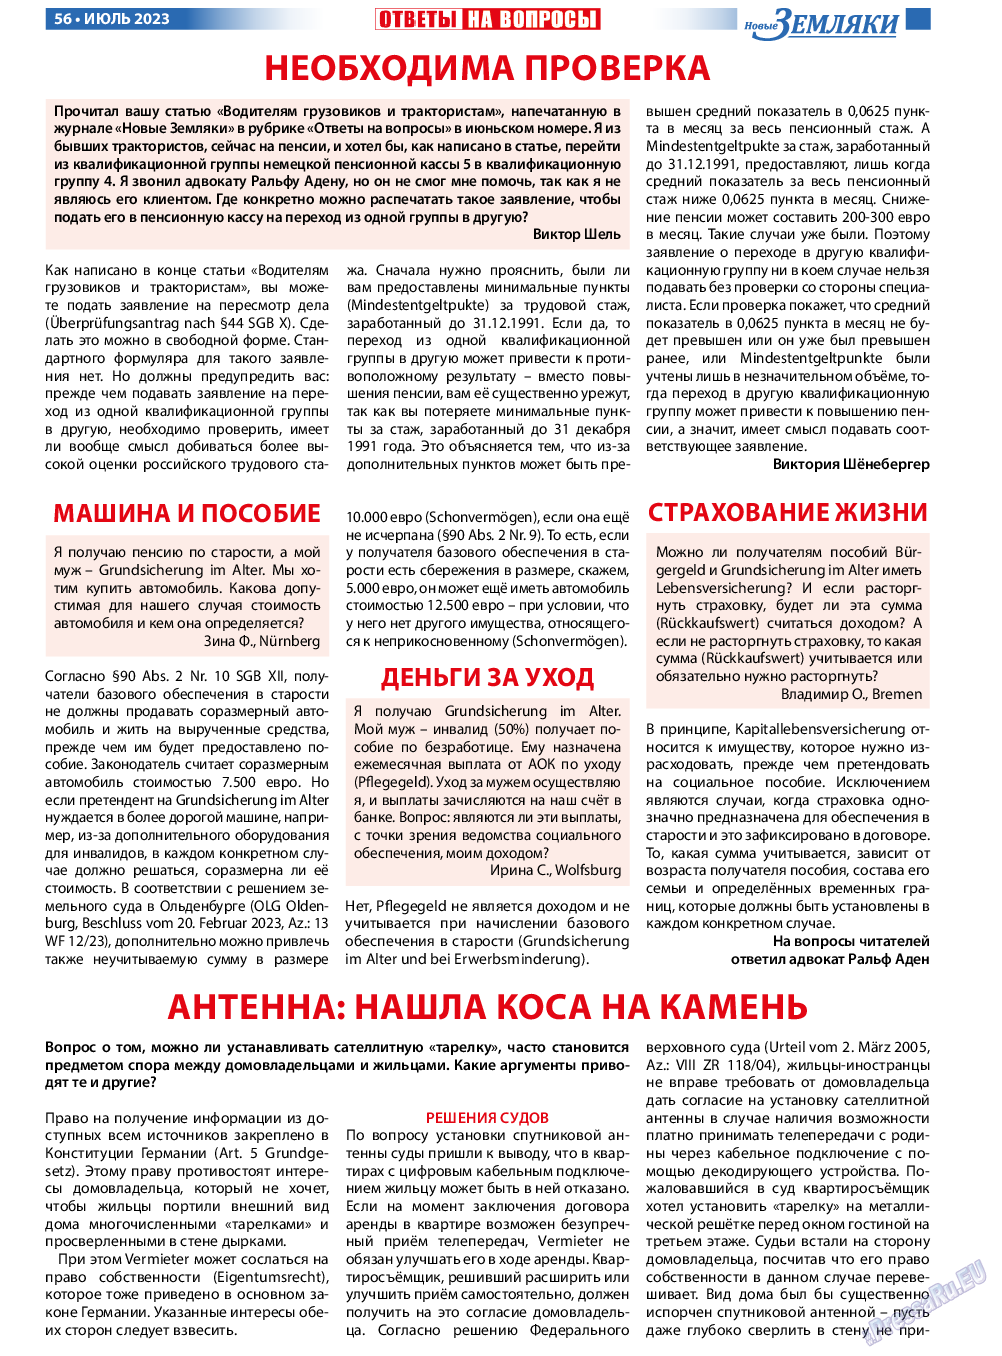 Новые Земляки, газета. 2023 №7 стр.56